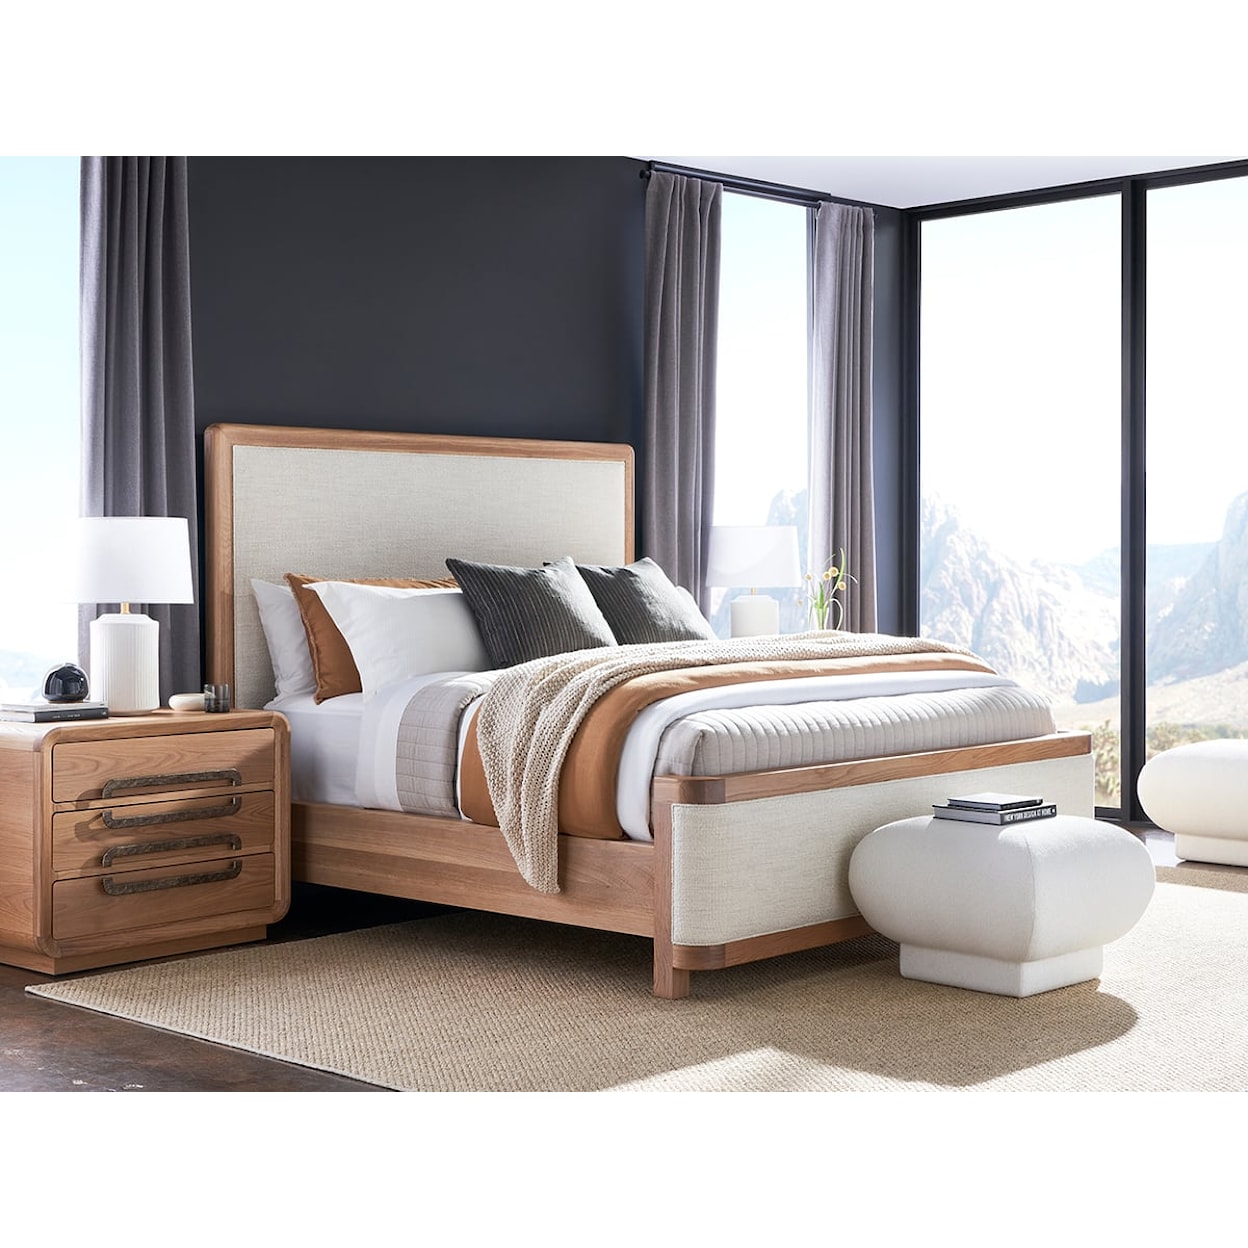 Vanguard Furniture Form King Bed